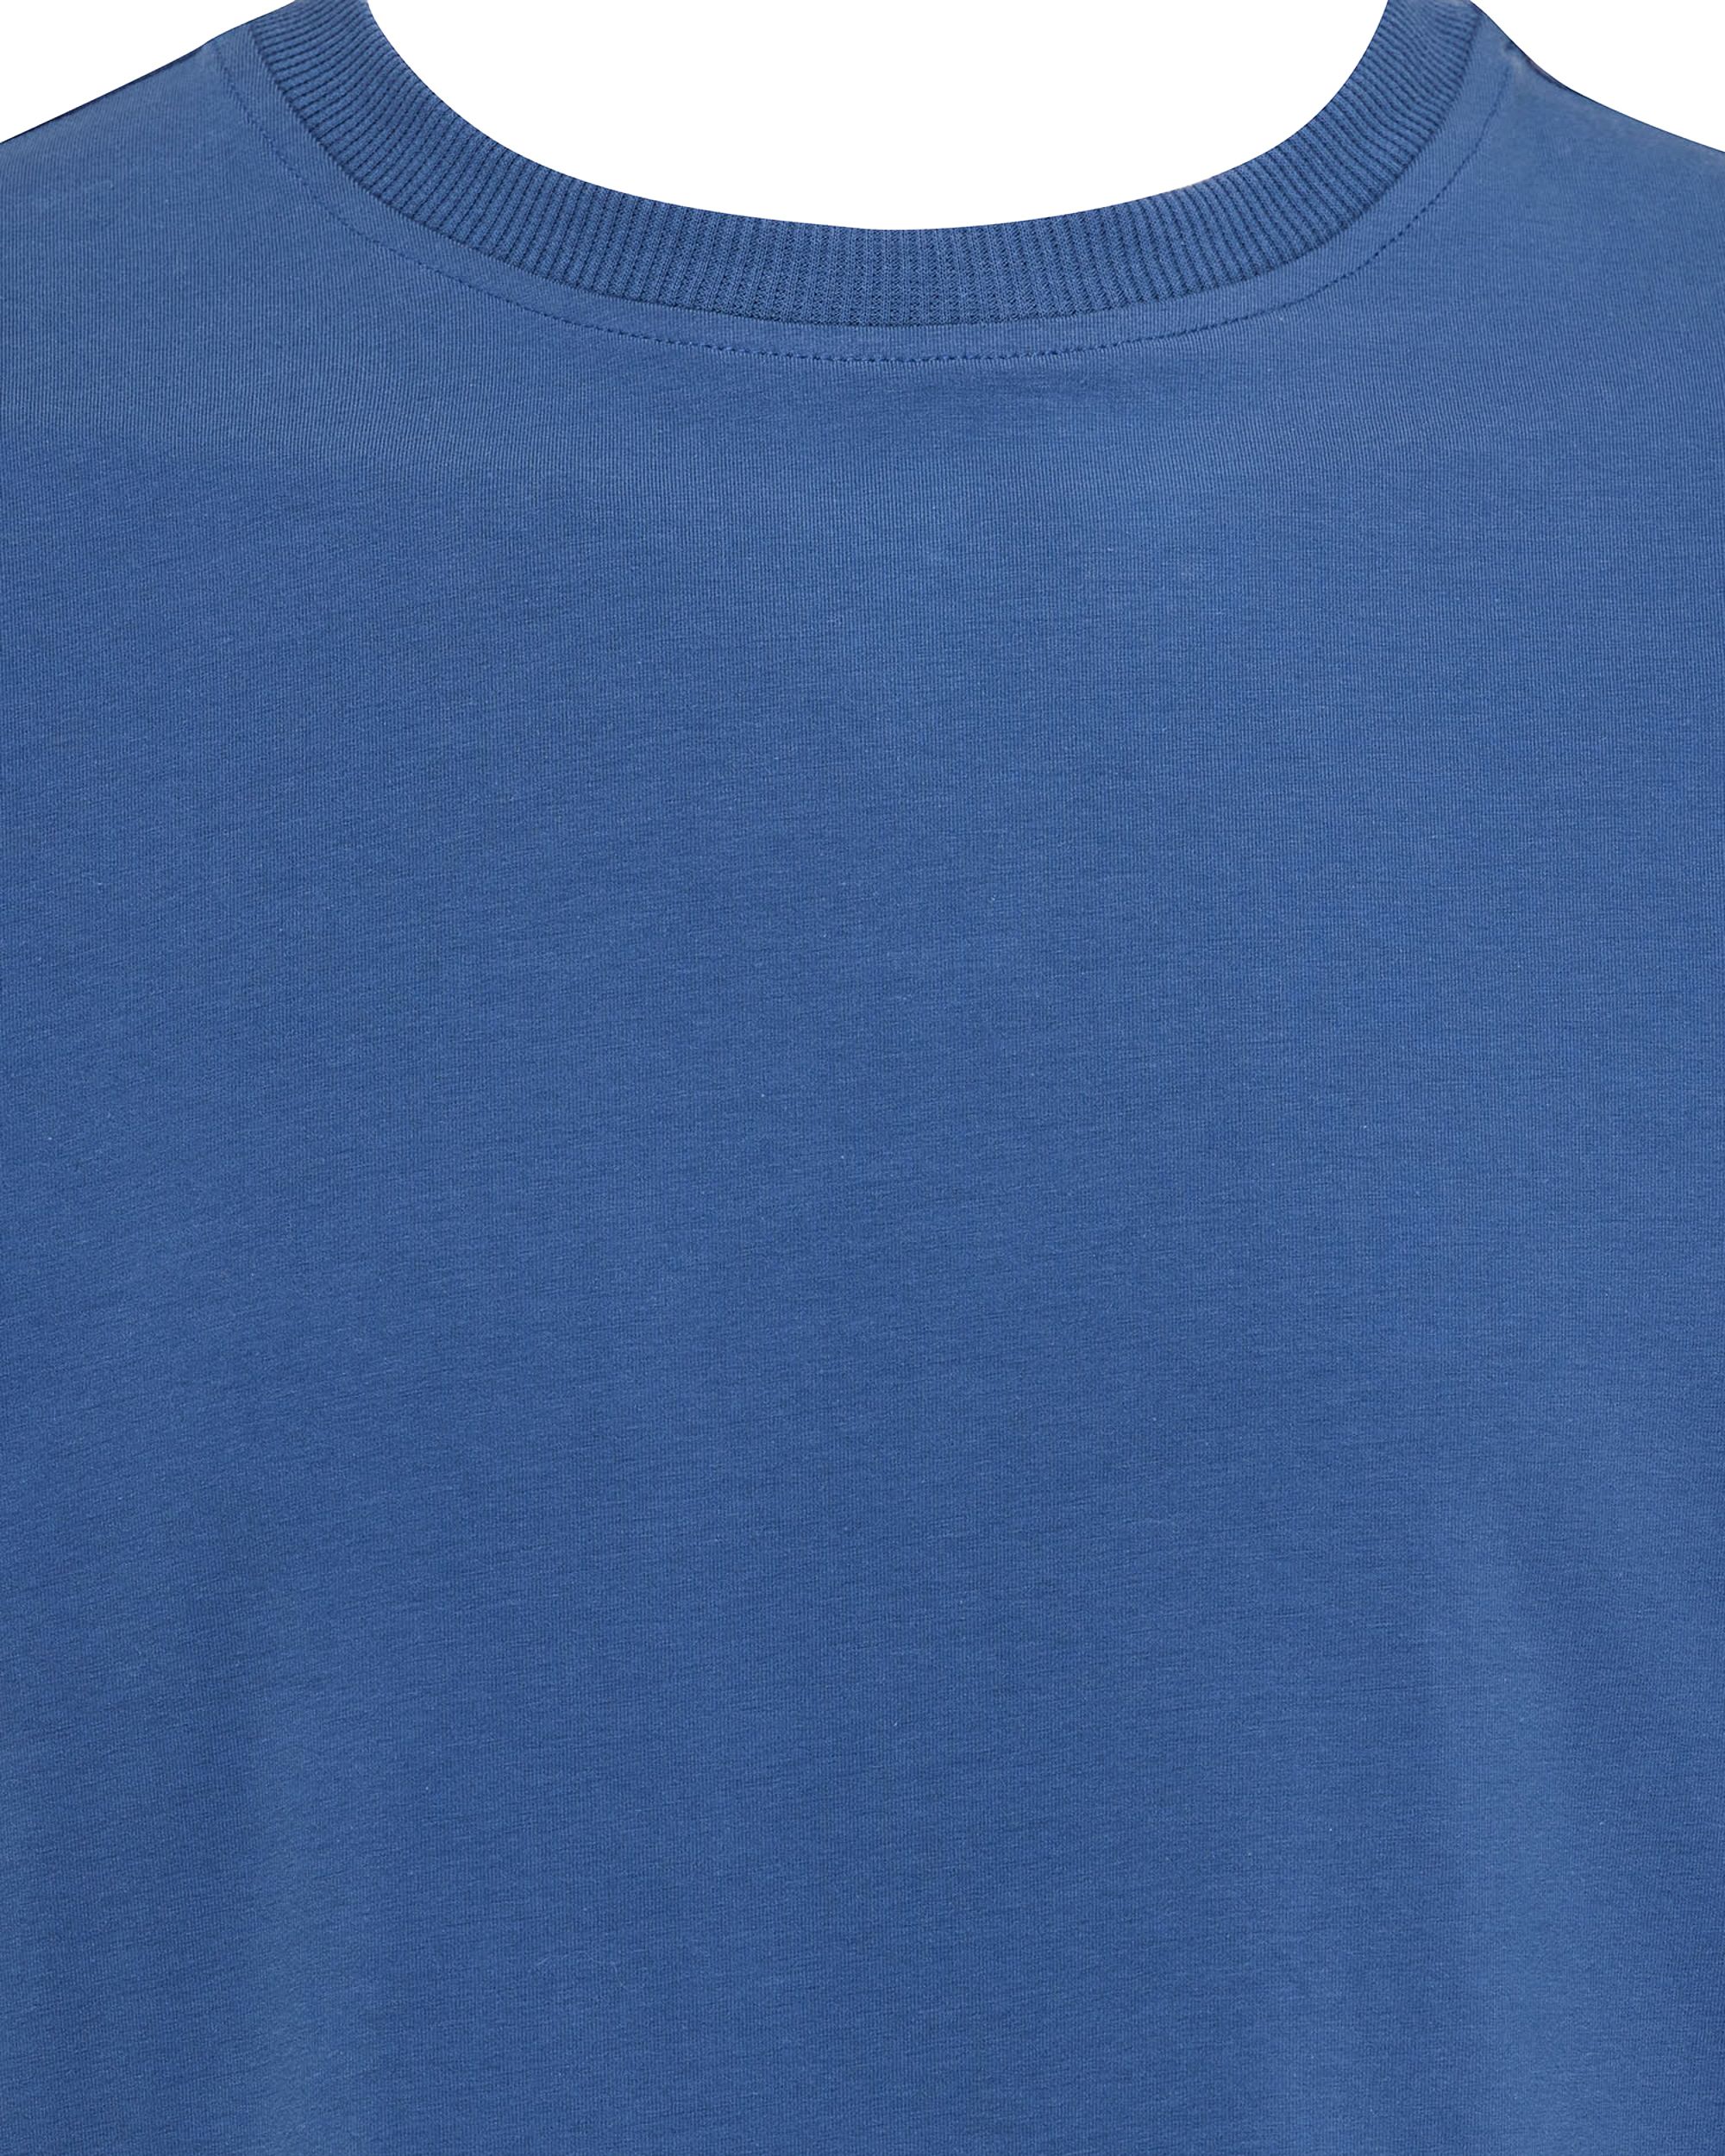 Genti T-shirt KM Blauw 092158-001-L